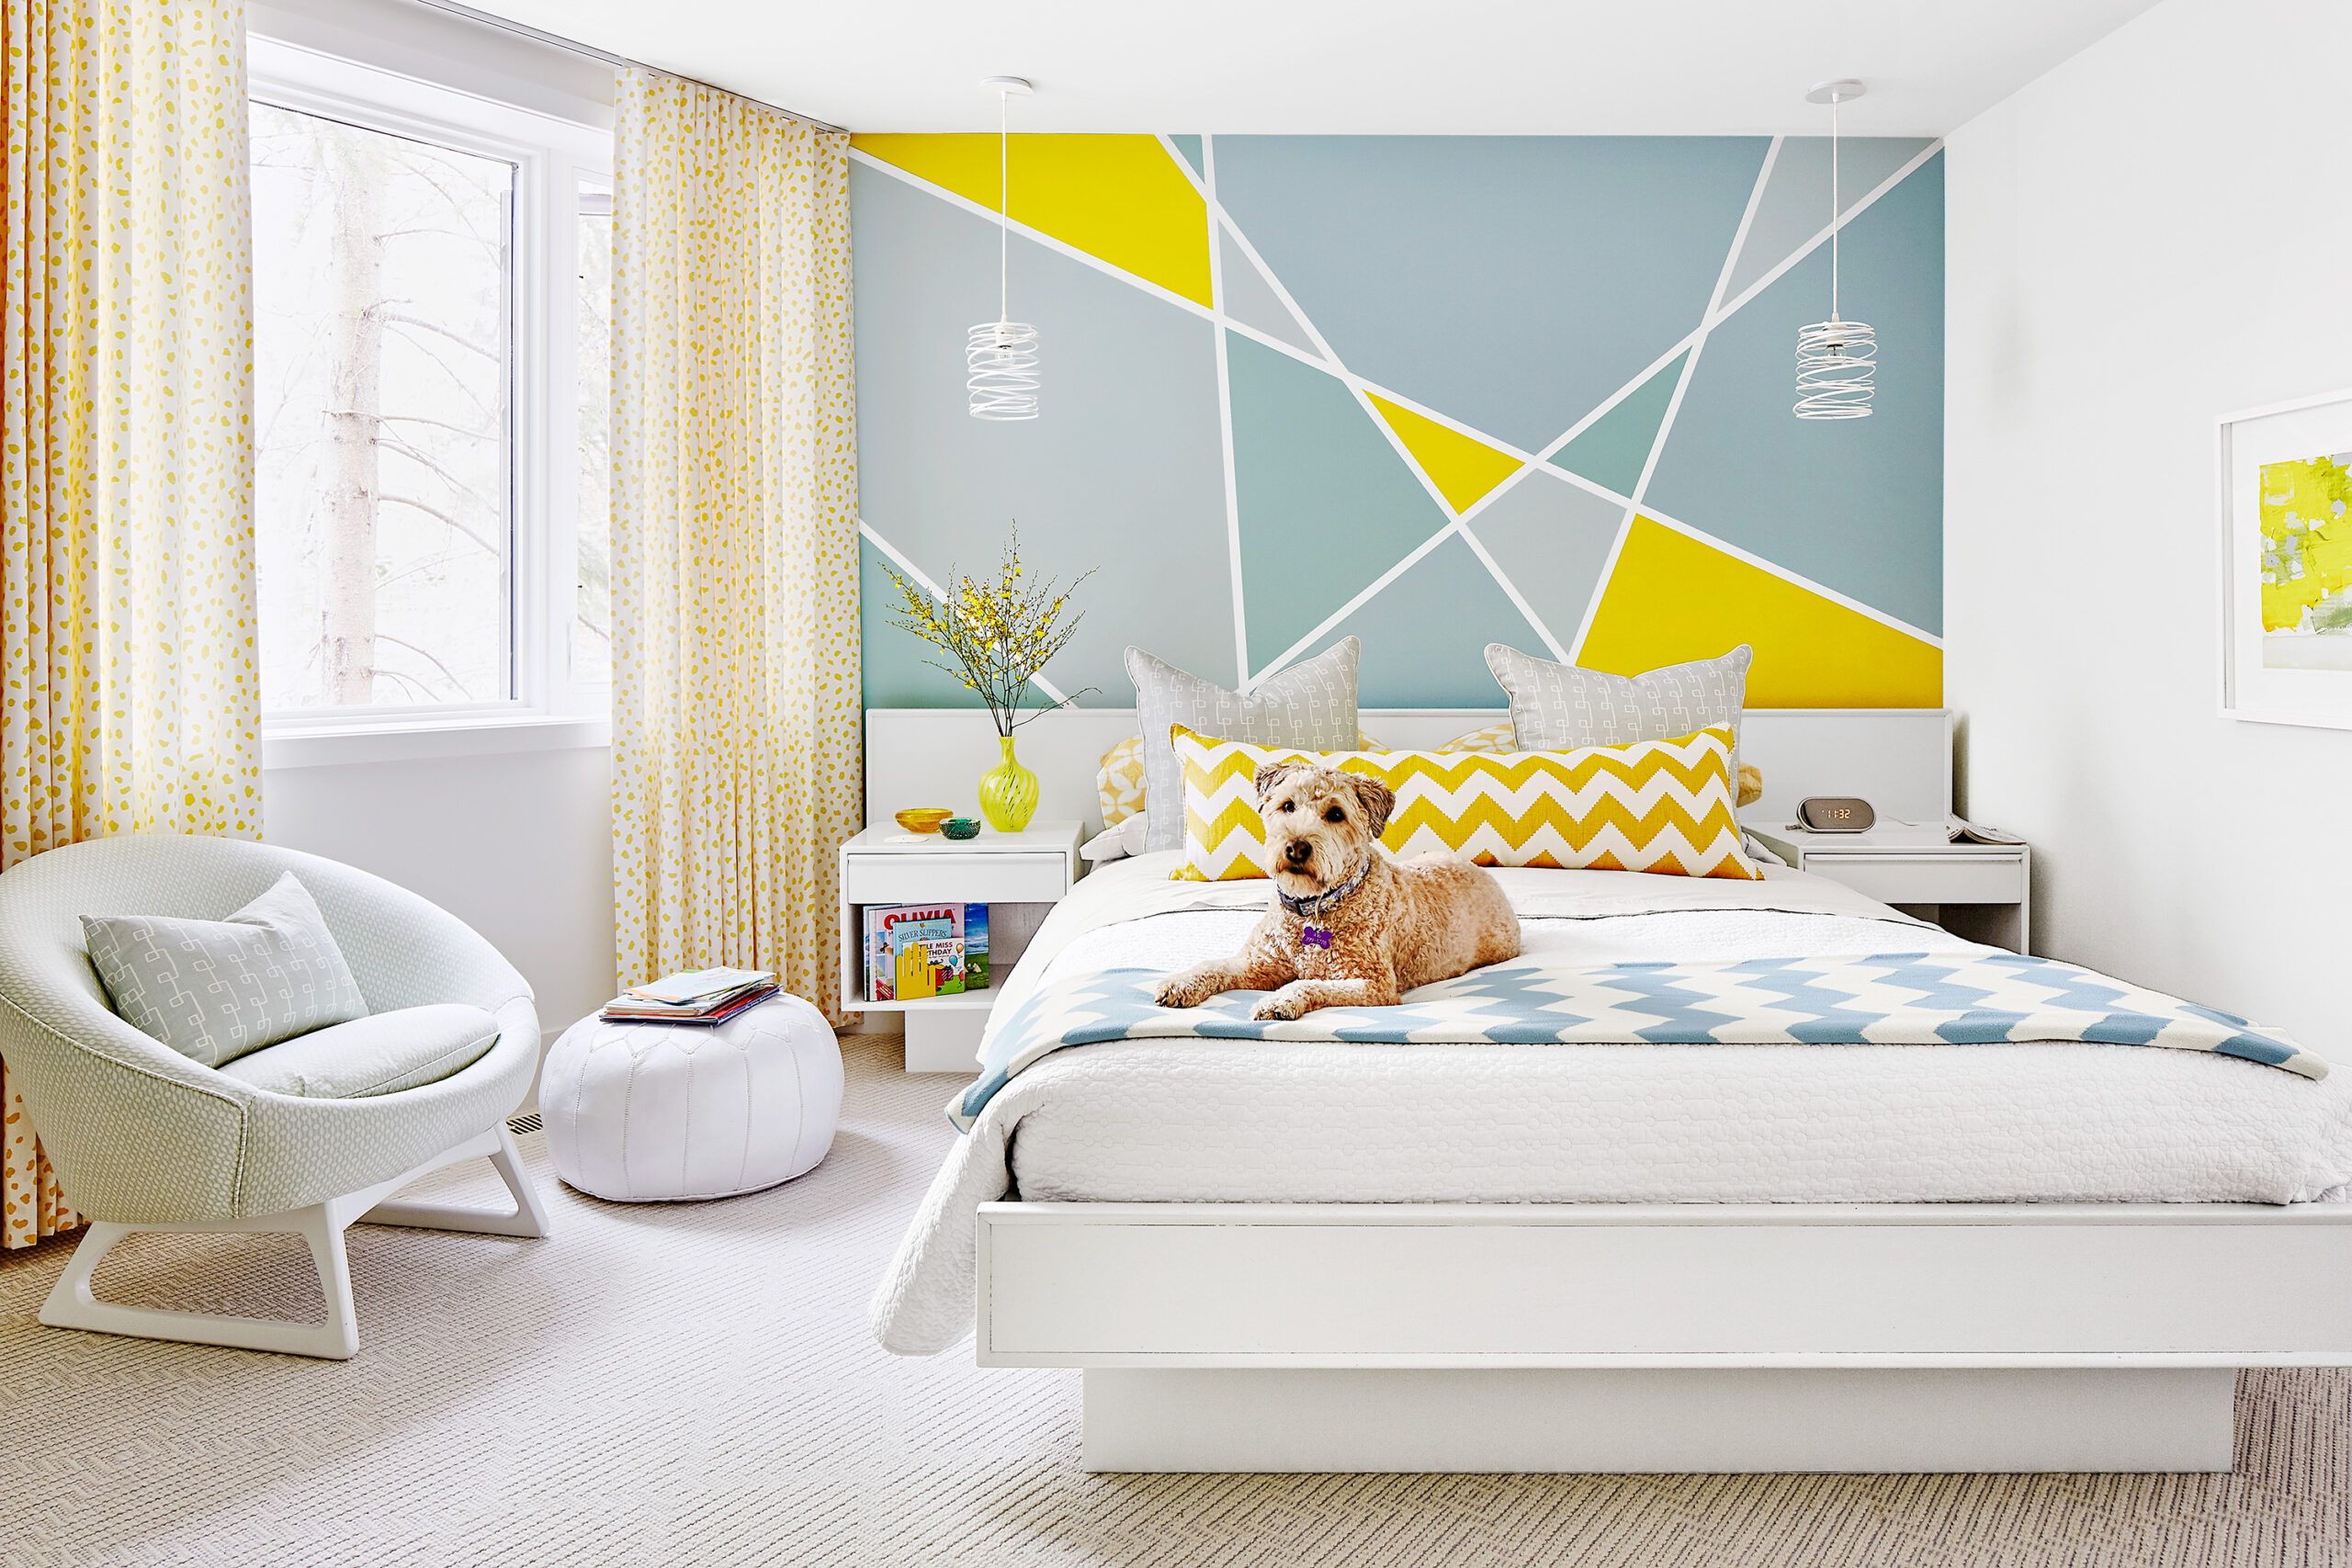 20 Best Paint Colors - Interior Designers' Favorite Wall Paint Colors